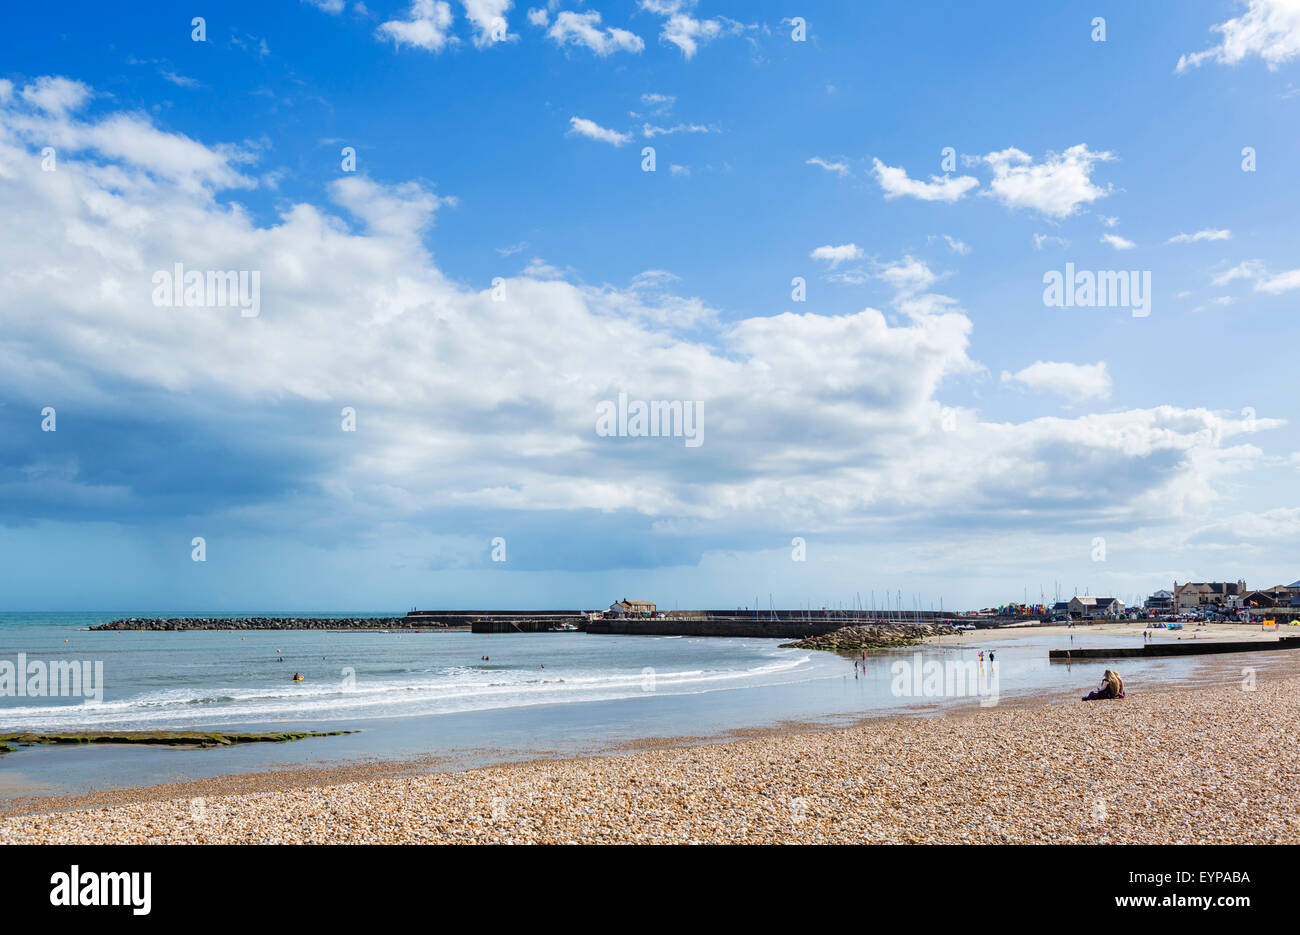 La plage de la ville avec le derrière de Cobb, Lyme Regis, la baie de Lyme, sur la côte jurassique, Dorset, England, UK Banque D'Images